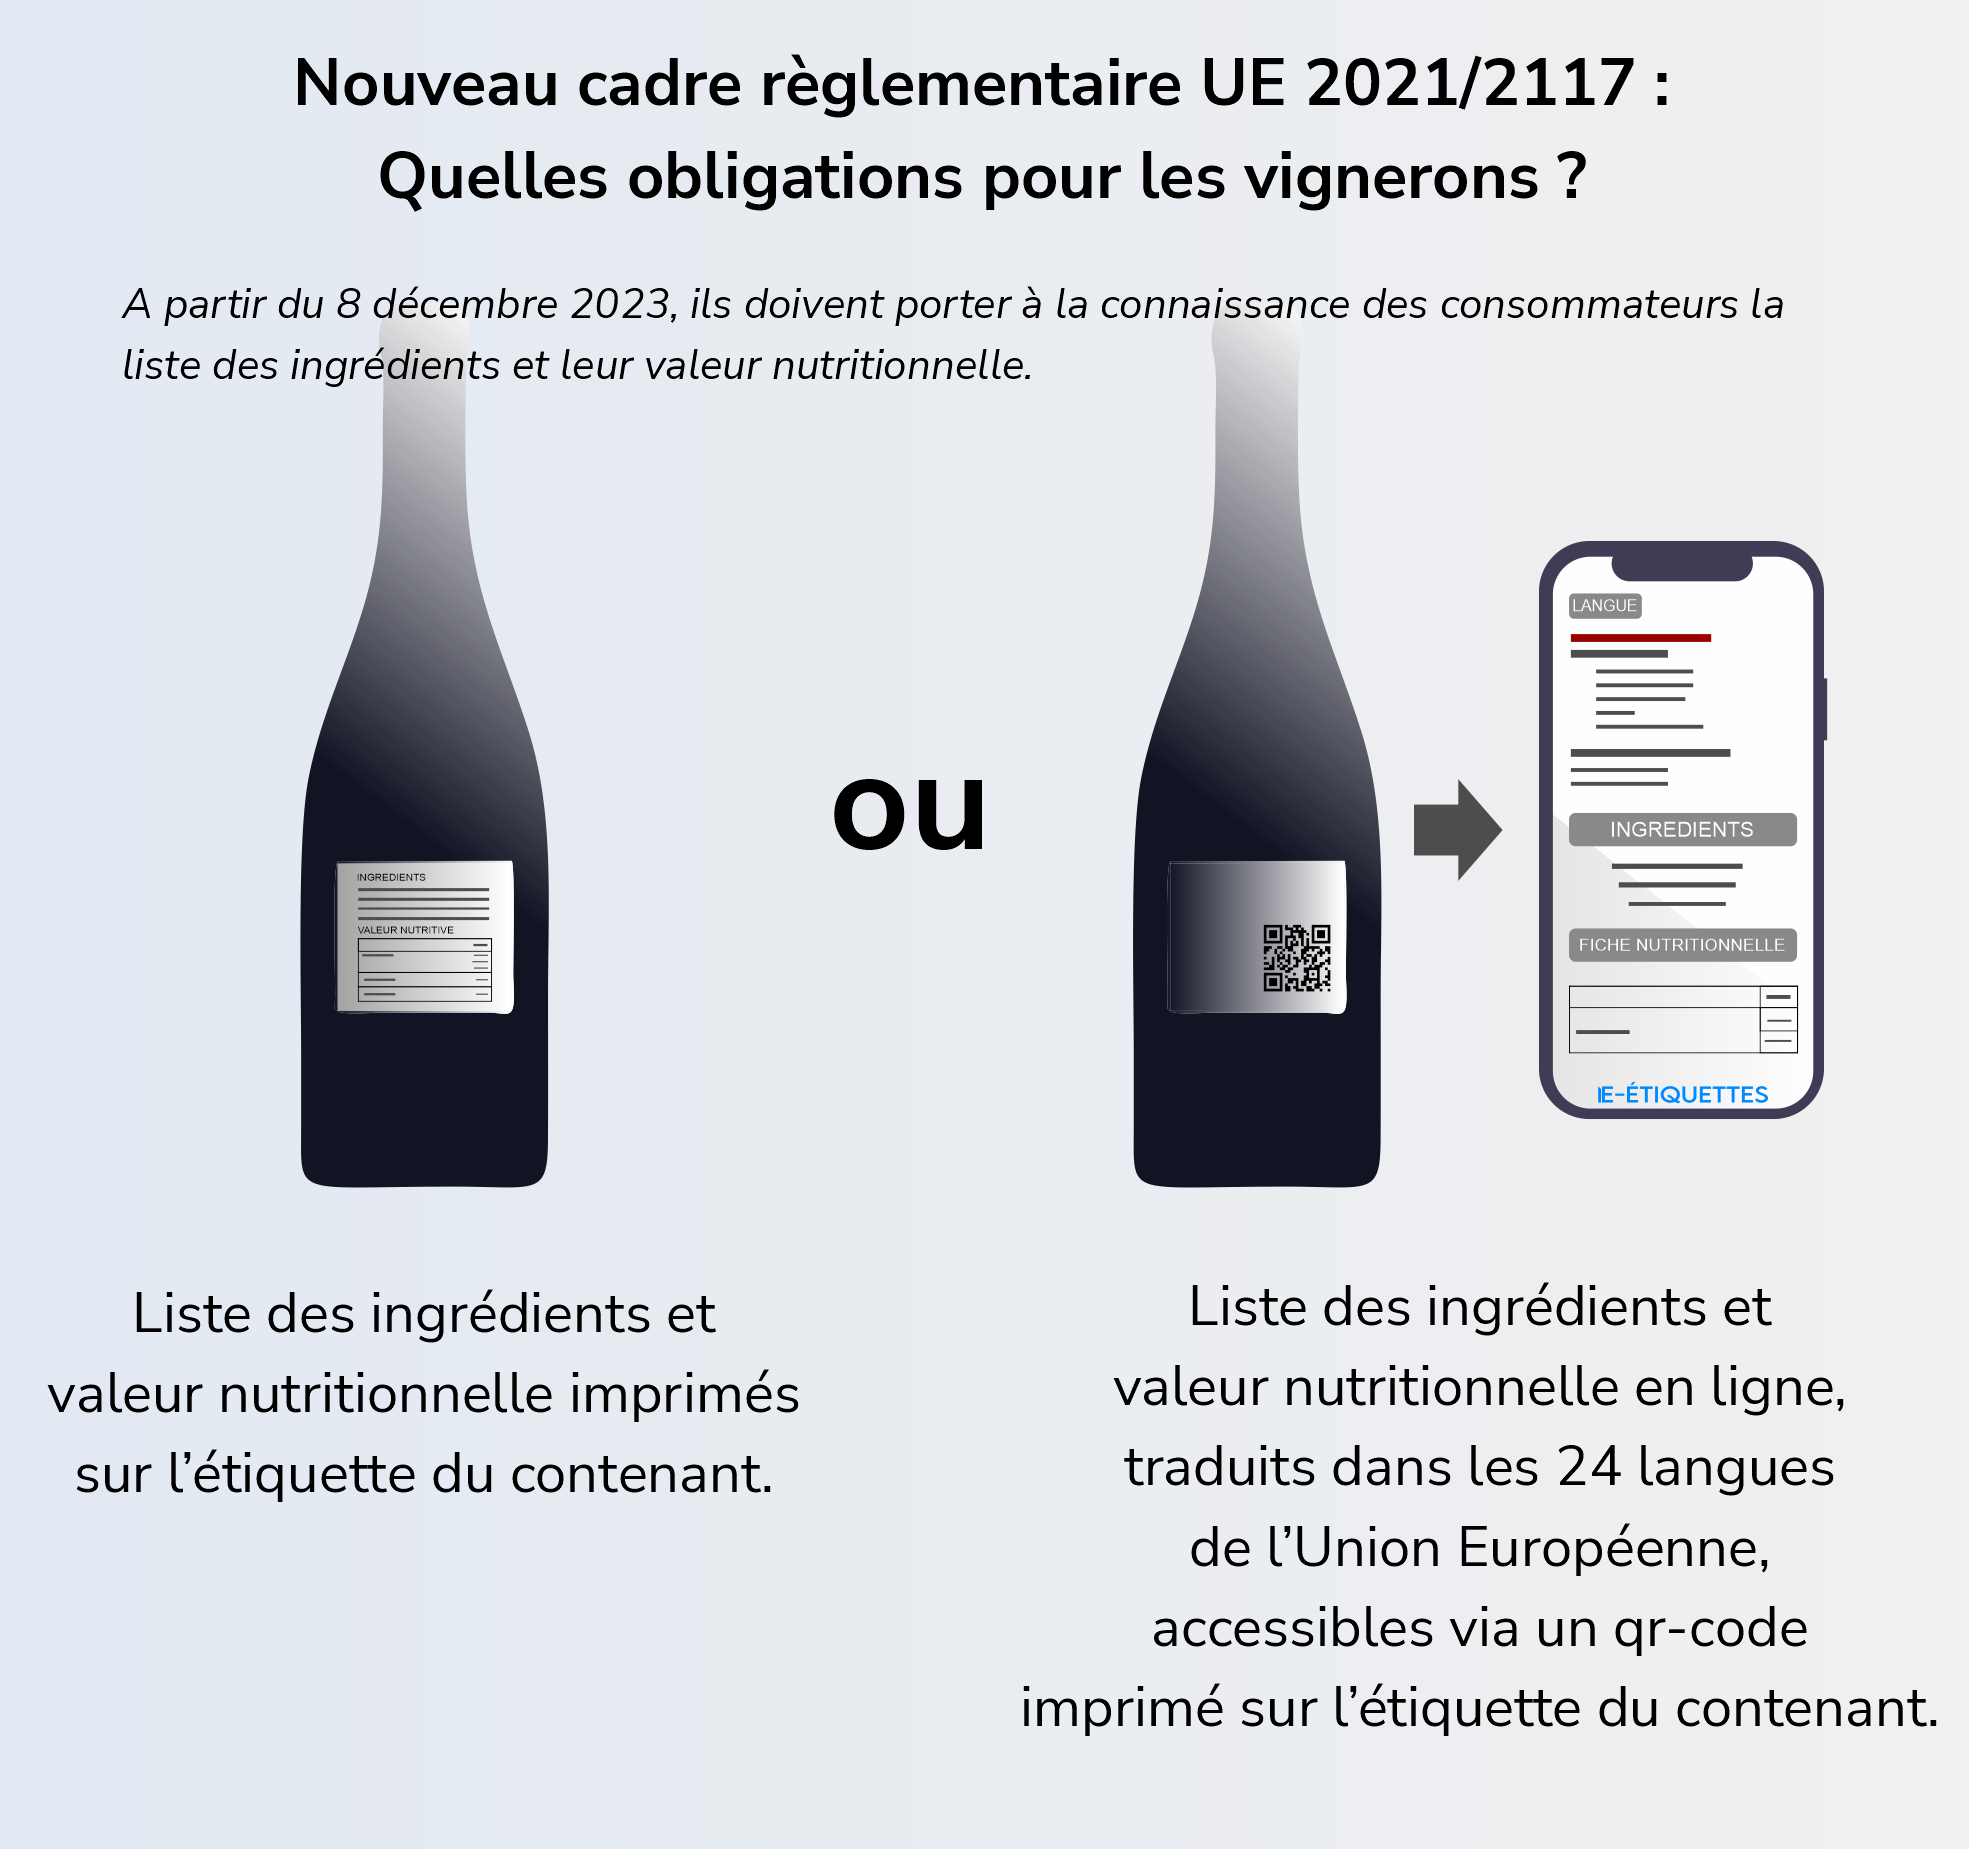 infographie qr code vin olibligations vignerons UE 2021-2117